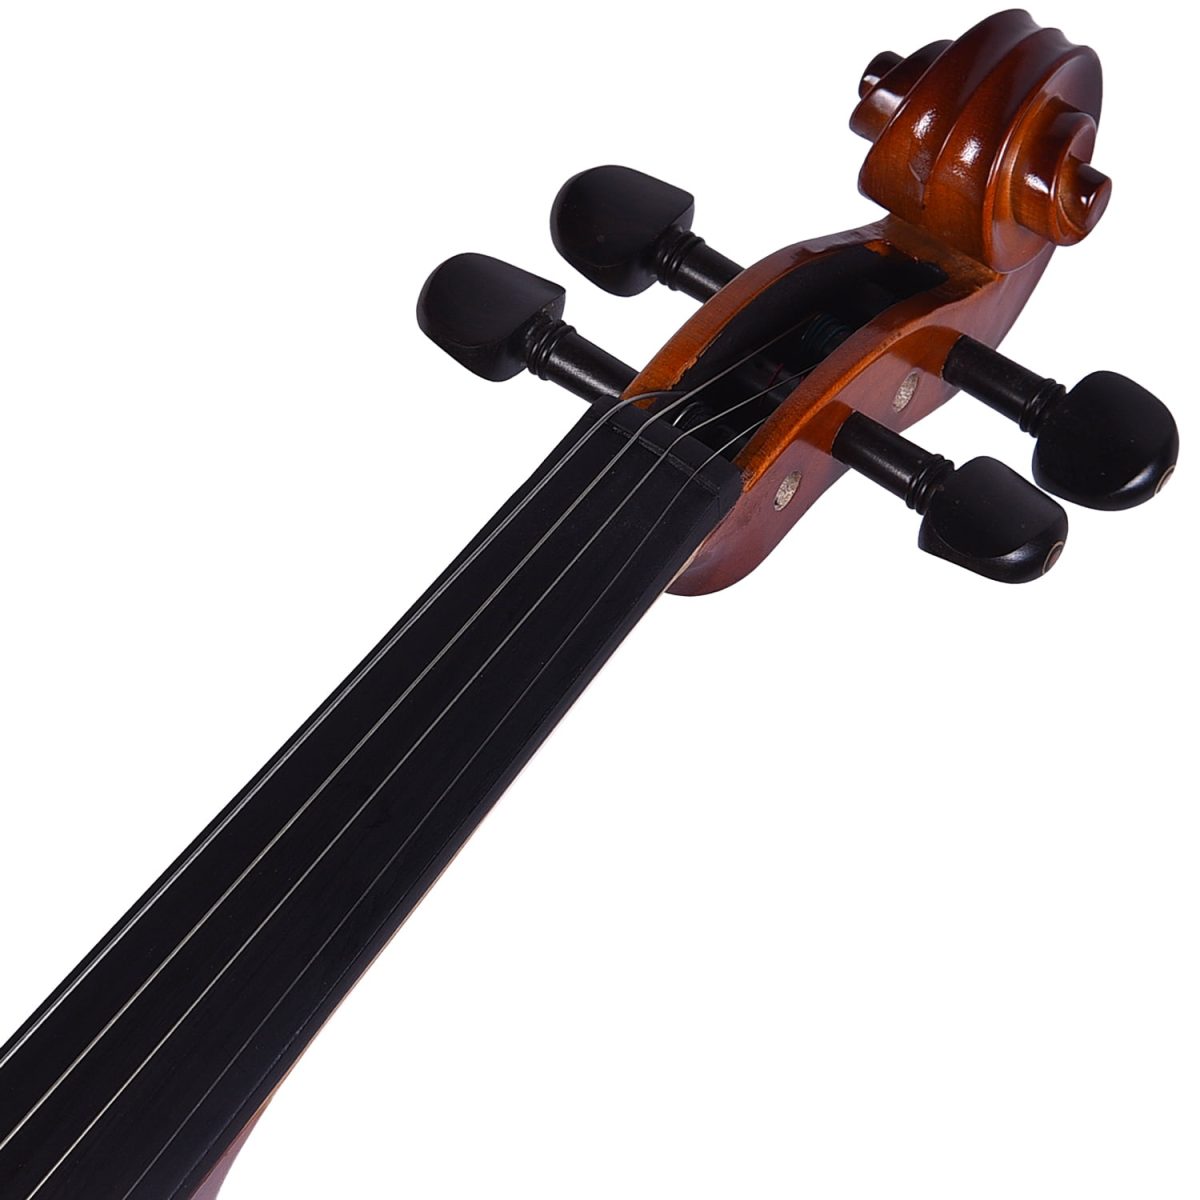 Kadence Vivaldi Violin V1001 Solid Spruce Top, Flame Maple Back